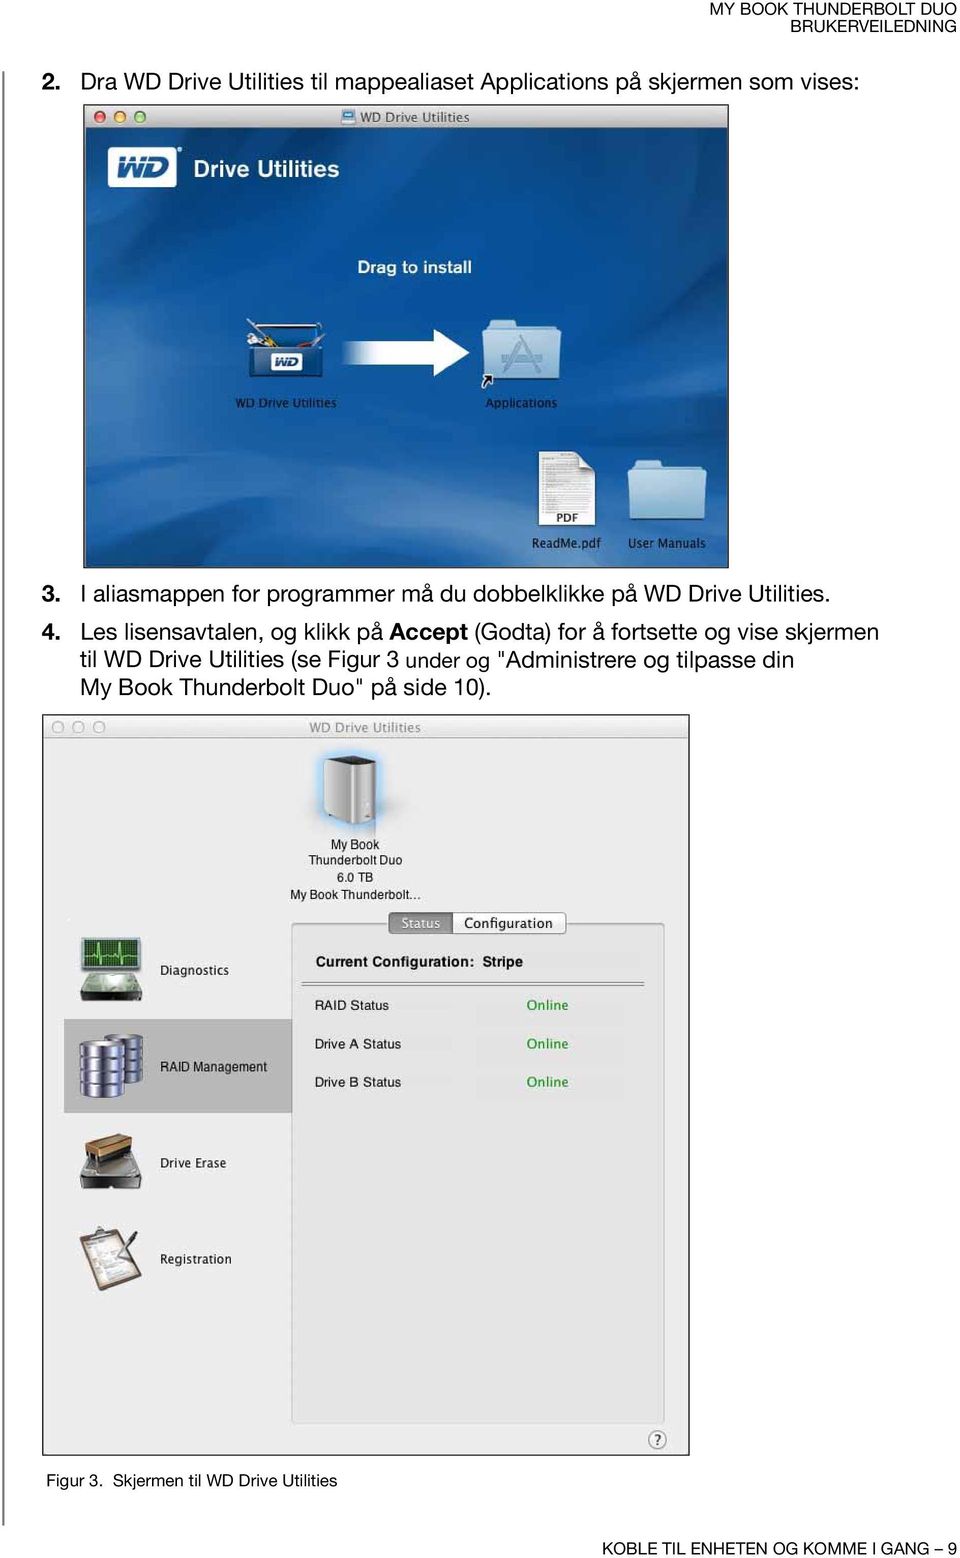 Les lisensavtalen, og klikk på Accept (Godta) for å fortsette og vise skjermen til WD Drive Utilities (se